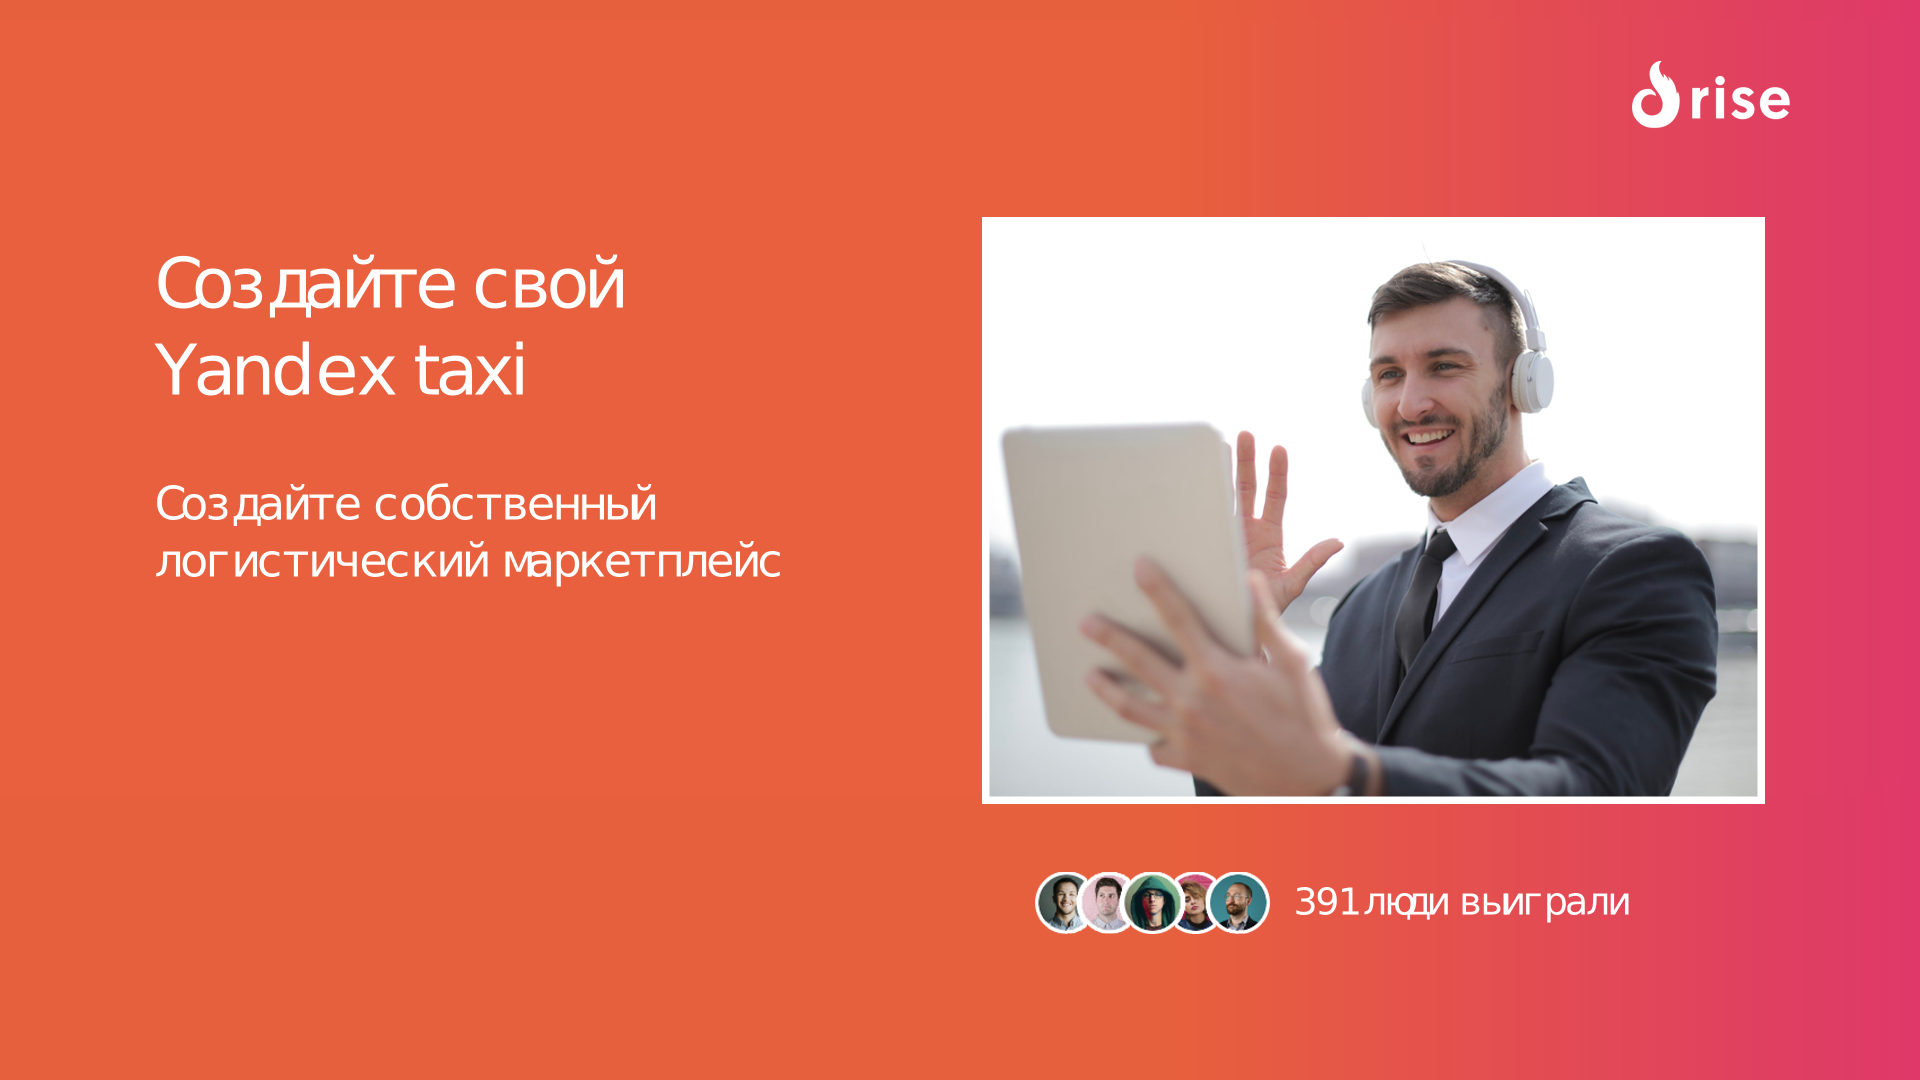 Создайте свой Yandex taxi